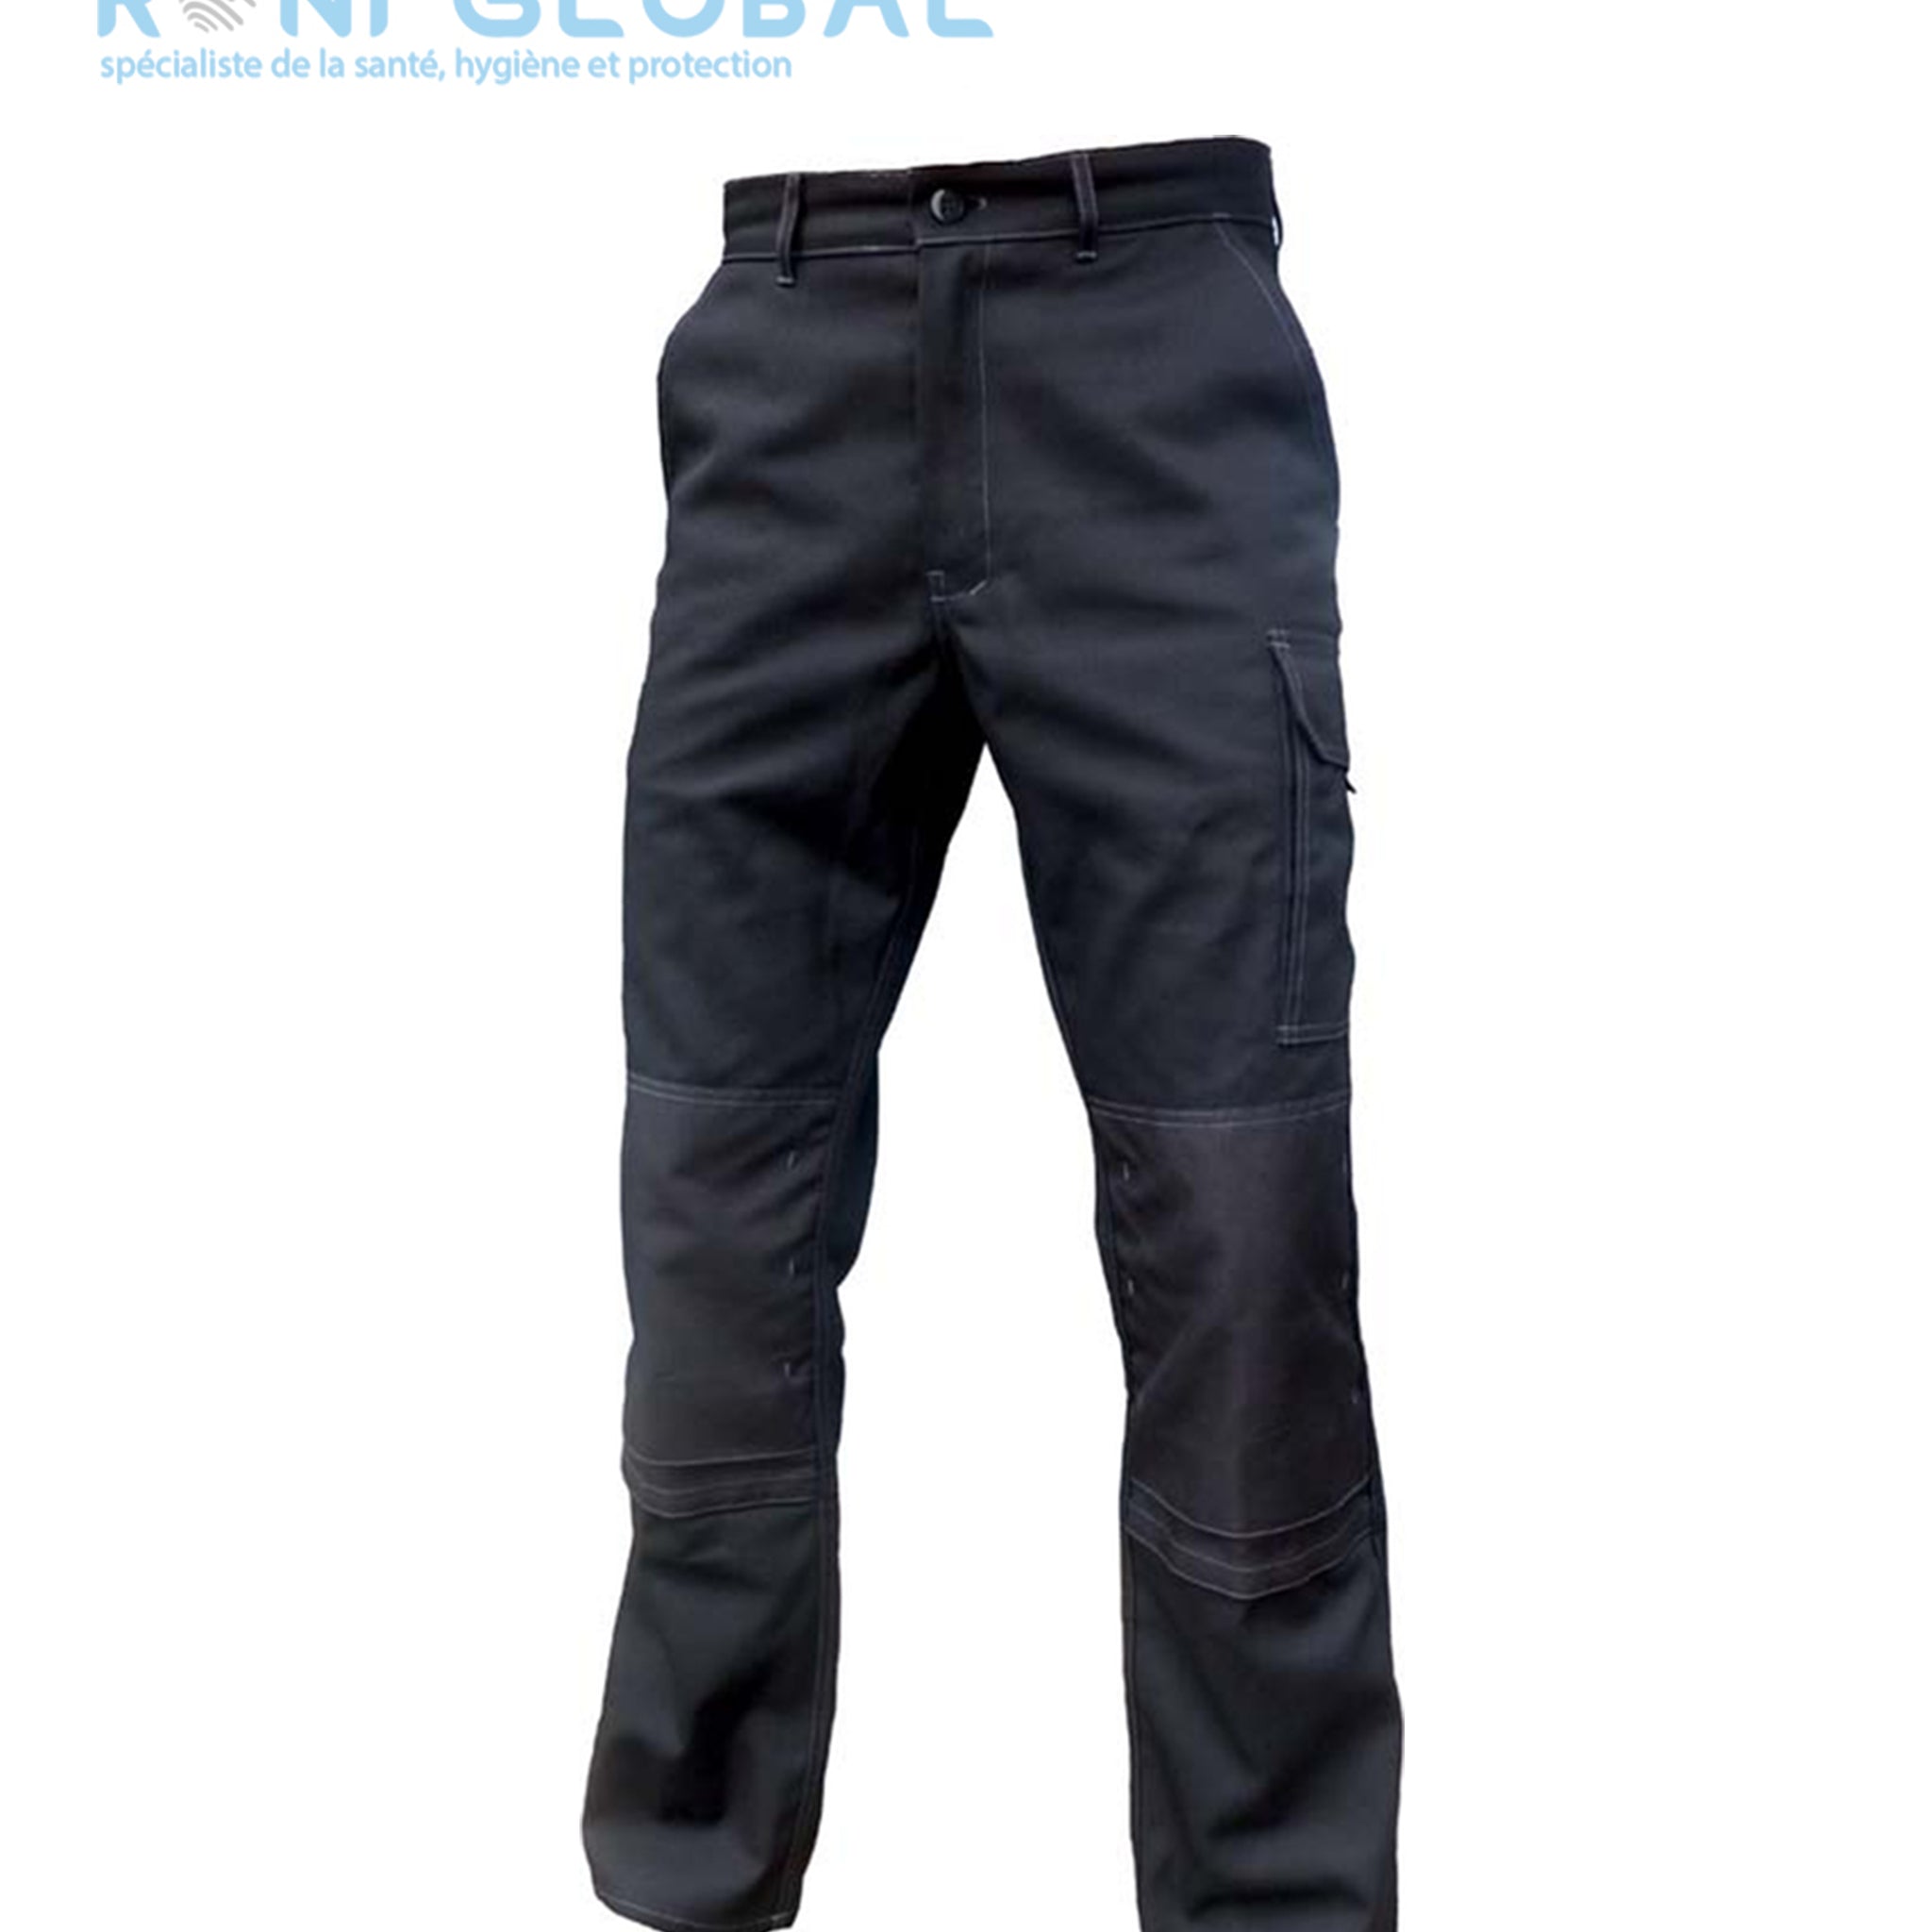 Pantalon de travail noir homme avec protection genoux, en coton/polyester sans métal et 6 poches - PANTALON PG DAVID NOIR PBV